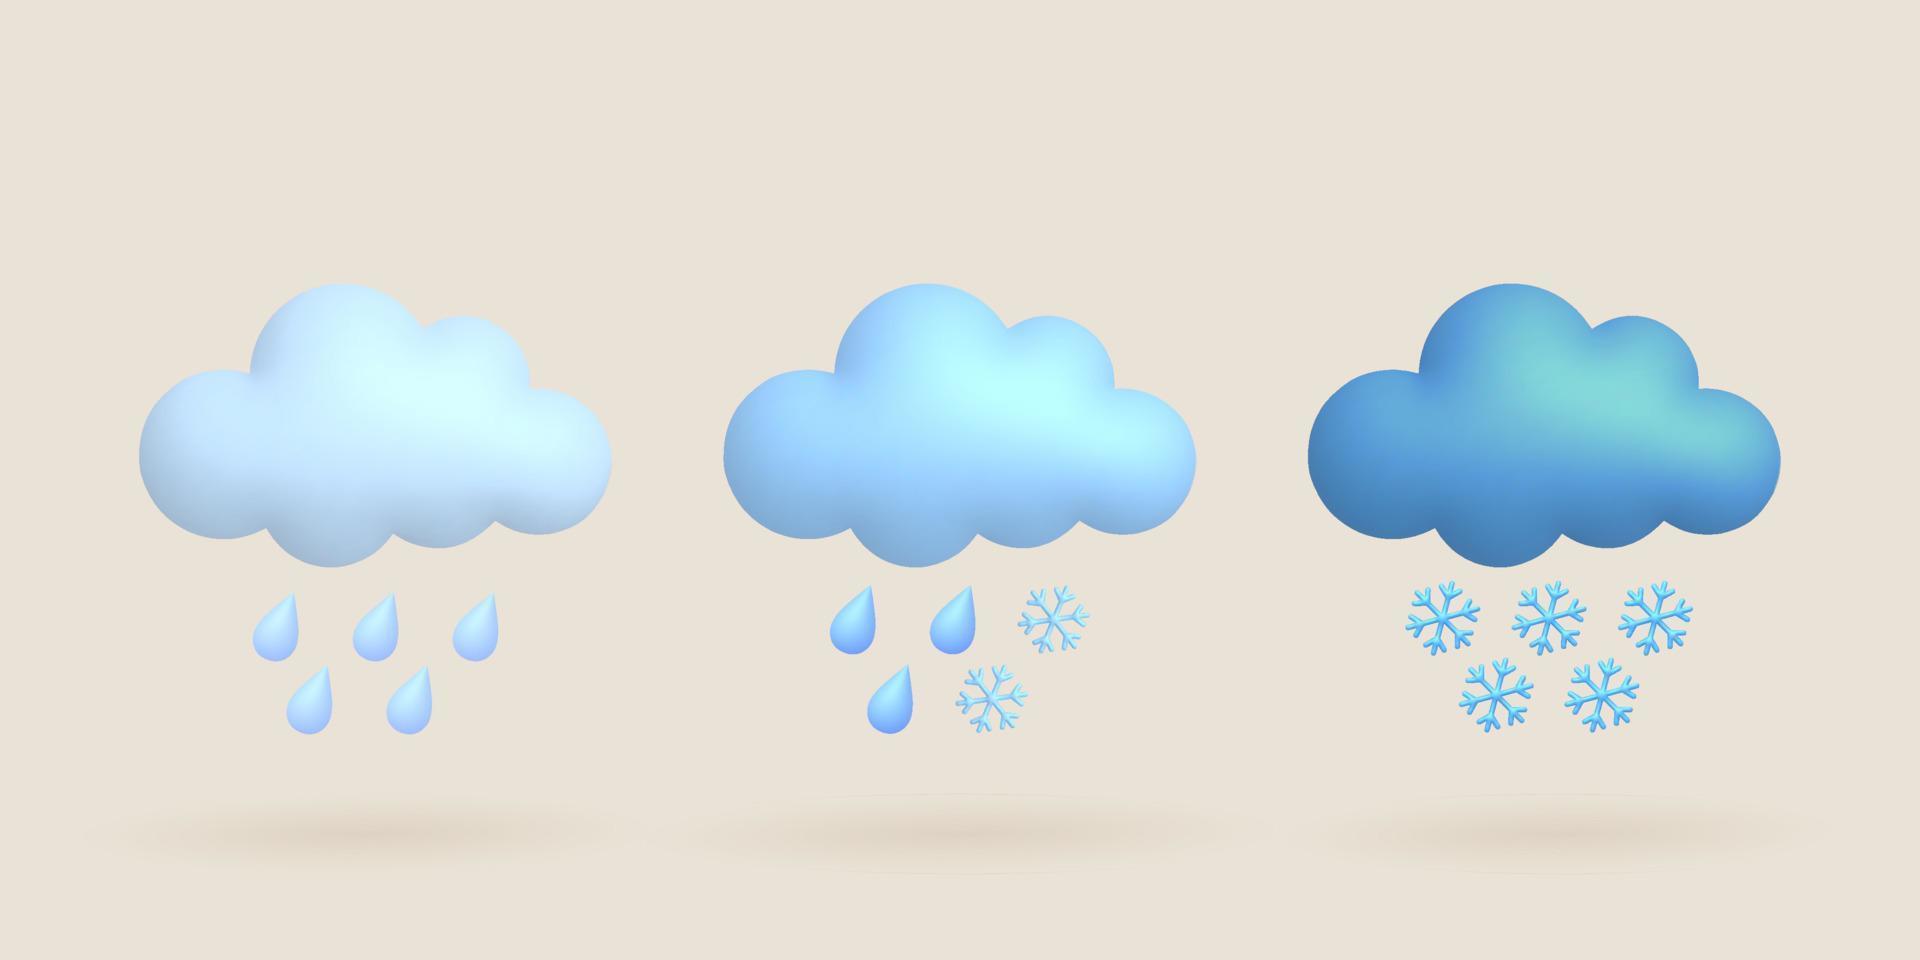 carino 3d cartone animato tempo metereologico icone impostare. nube, piovere, neve, pioggia far cadere, fiocco di neve. vettore illustrazione.